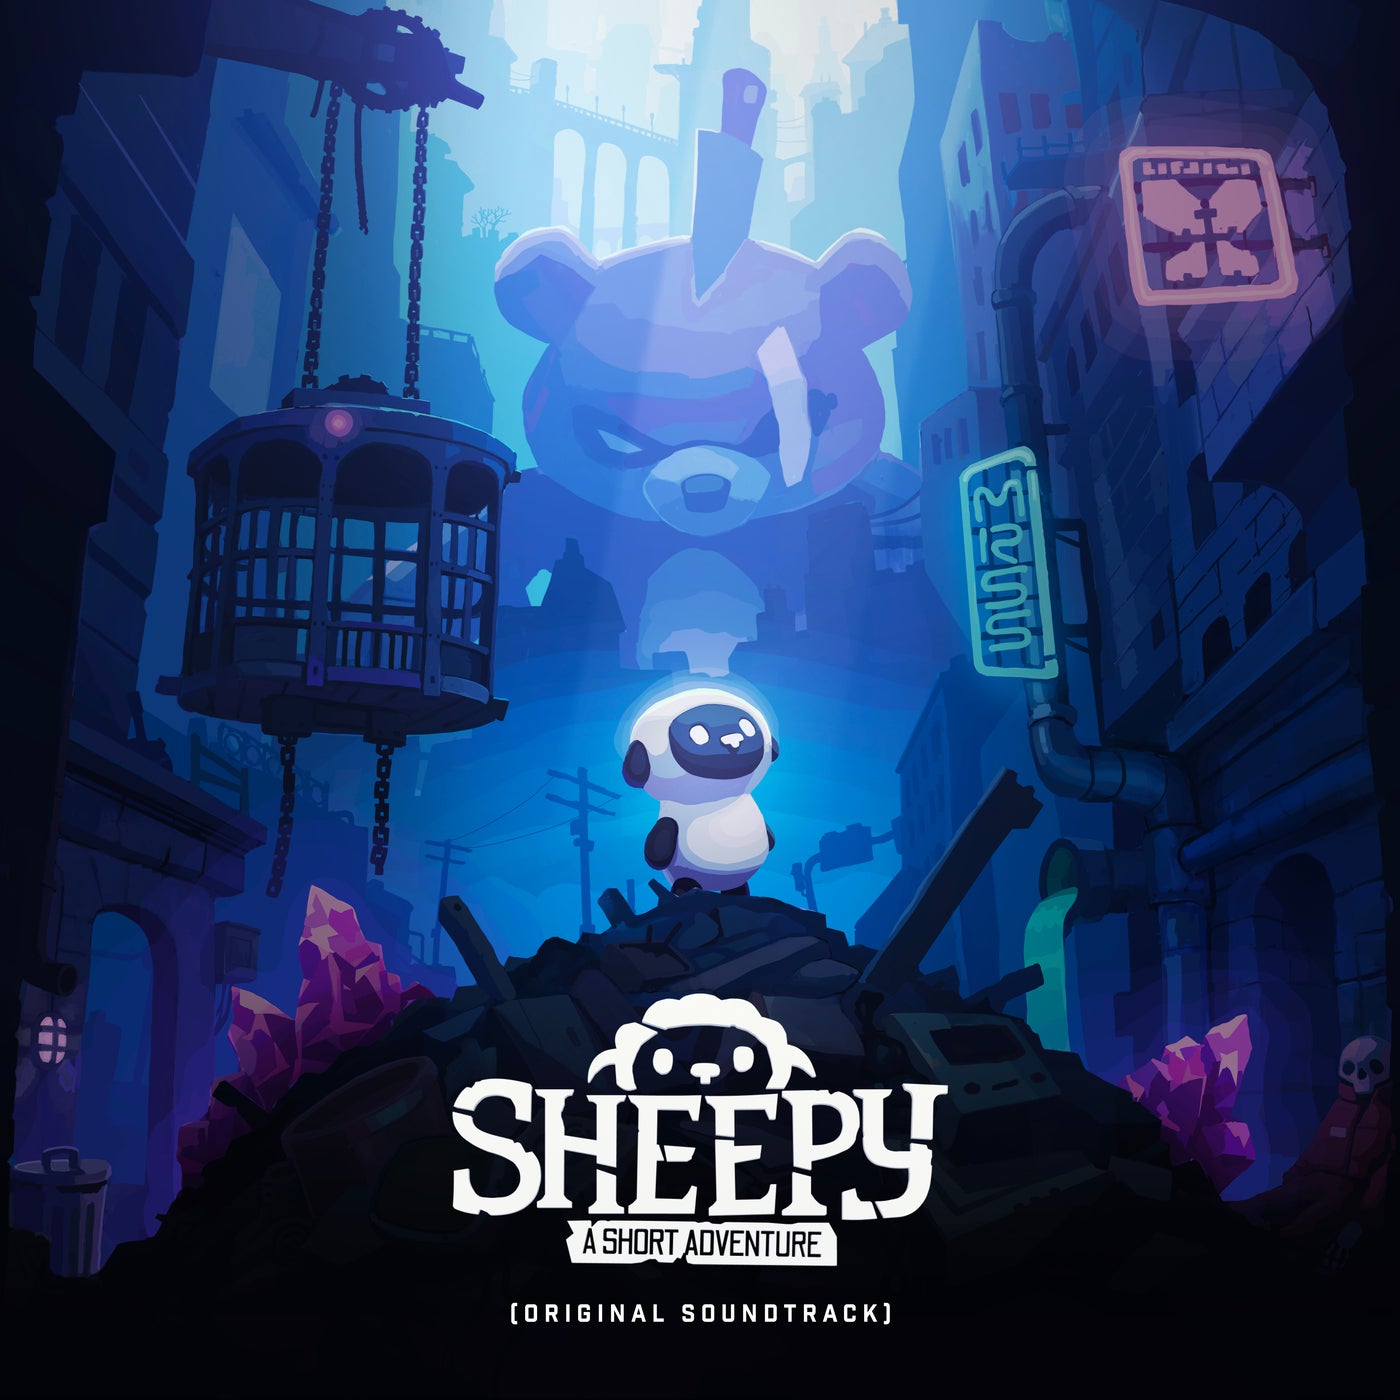 Sheepy: A Short Adventure (Original Soundtrack)